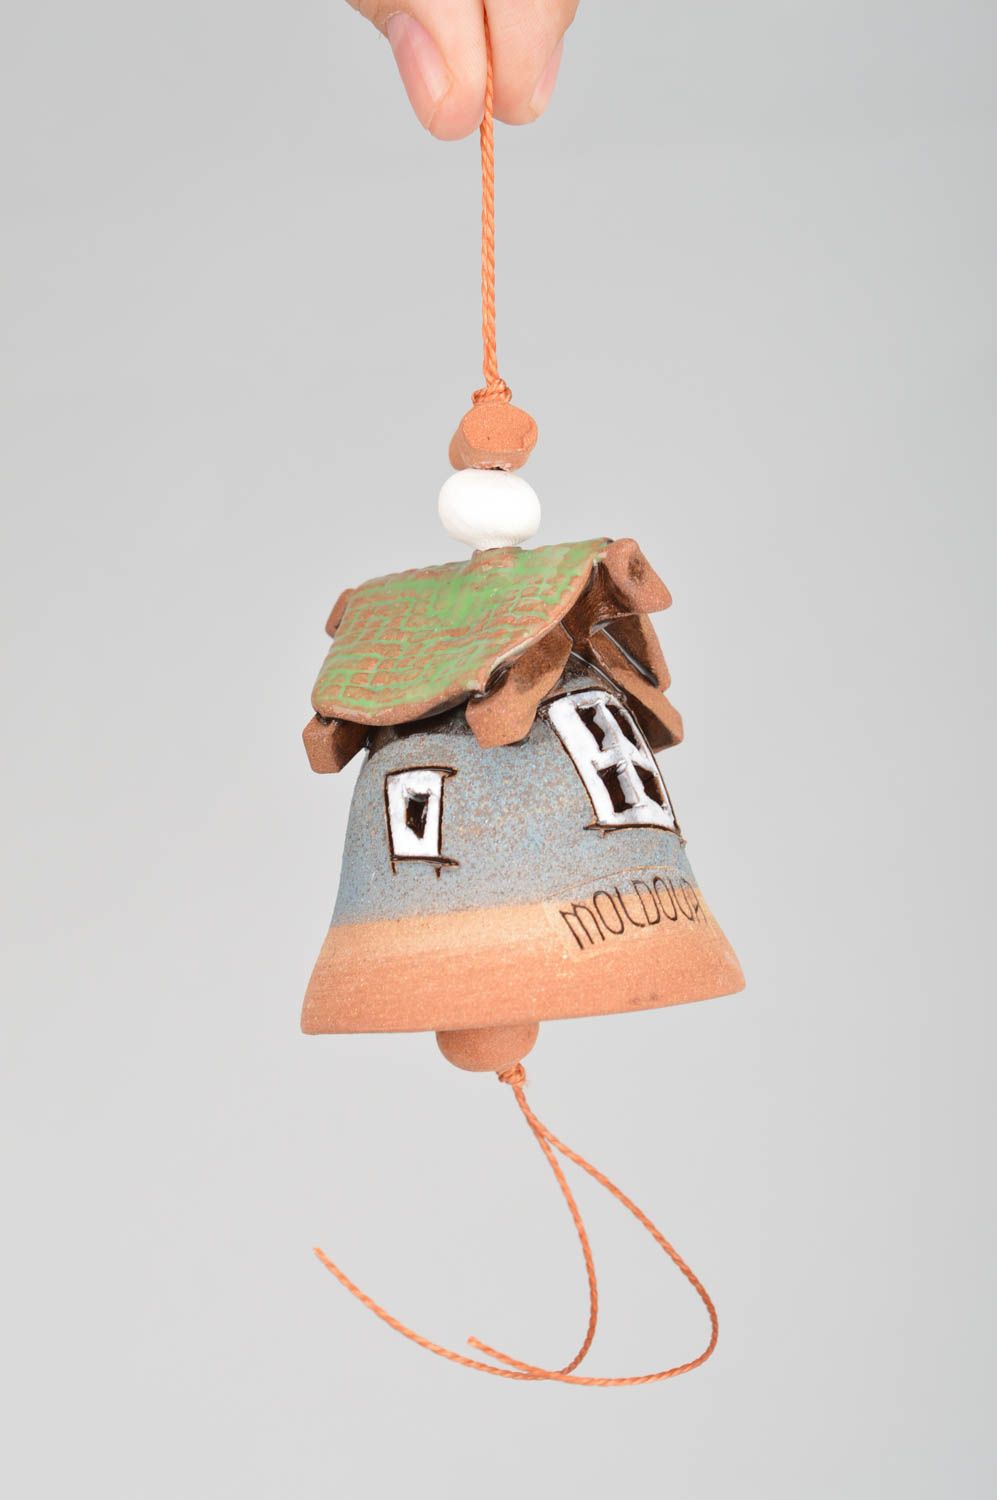 Глиняный колокольчик расписанный глазурью ручной работы в виде красивого домика  фото 3